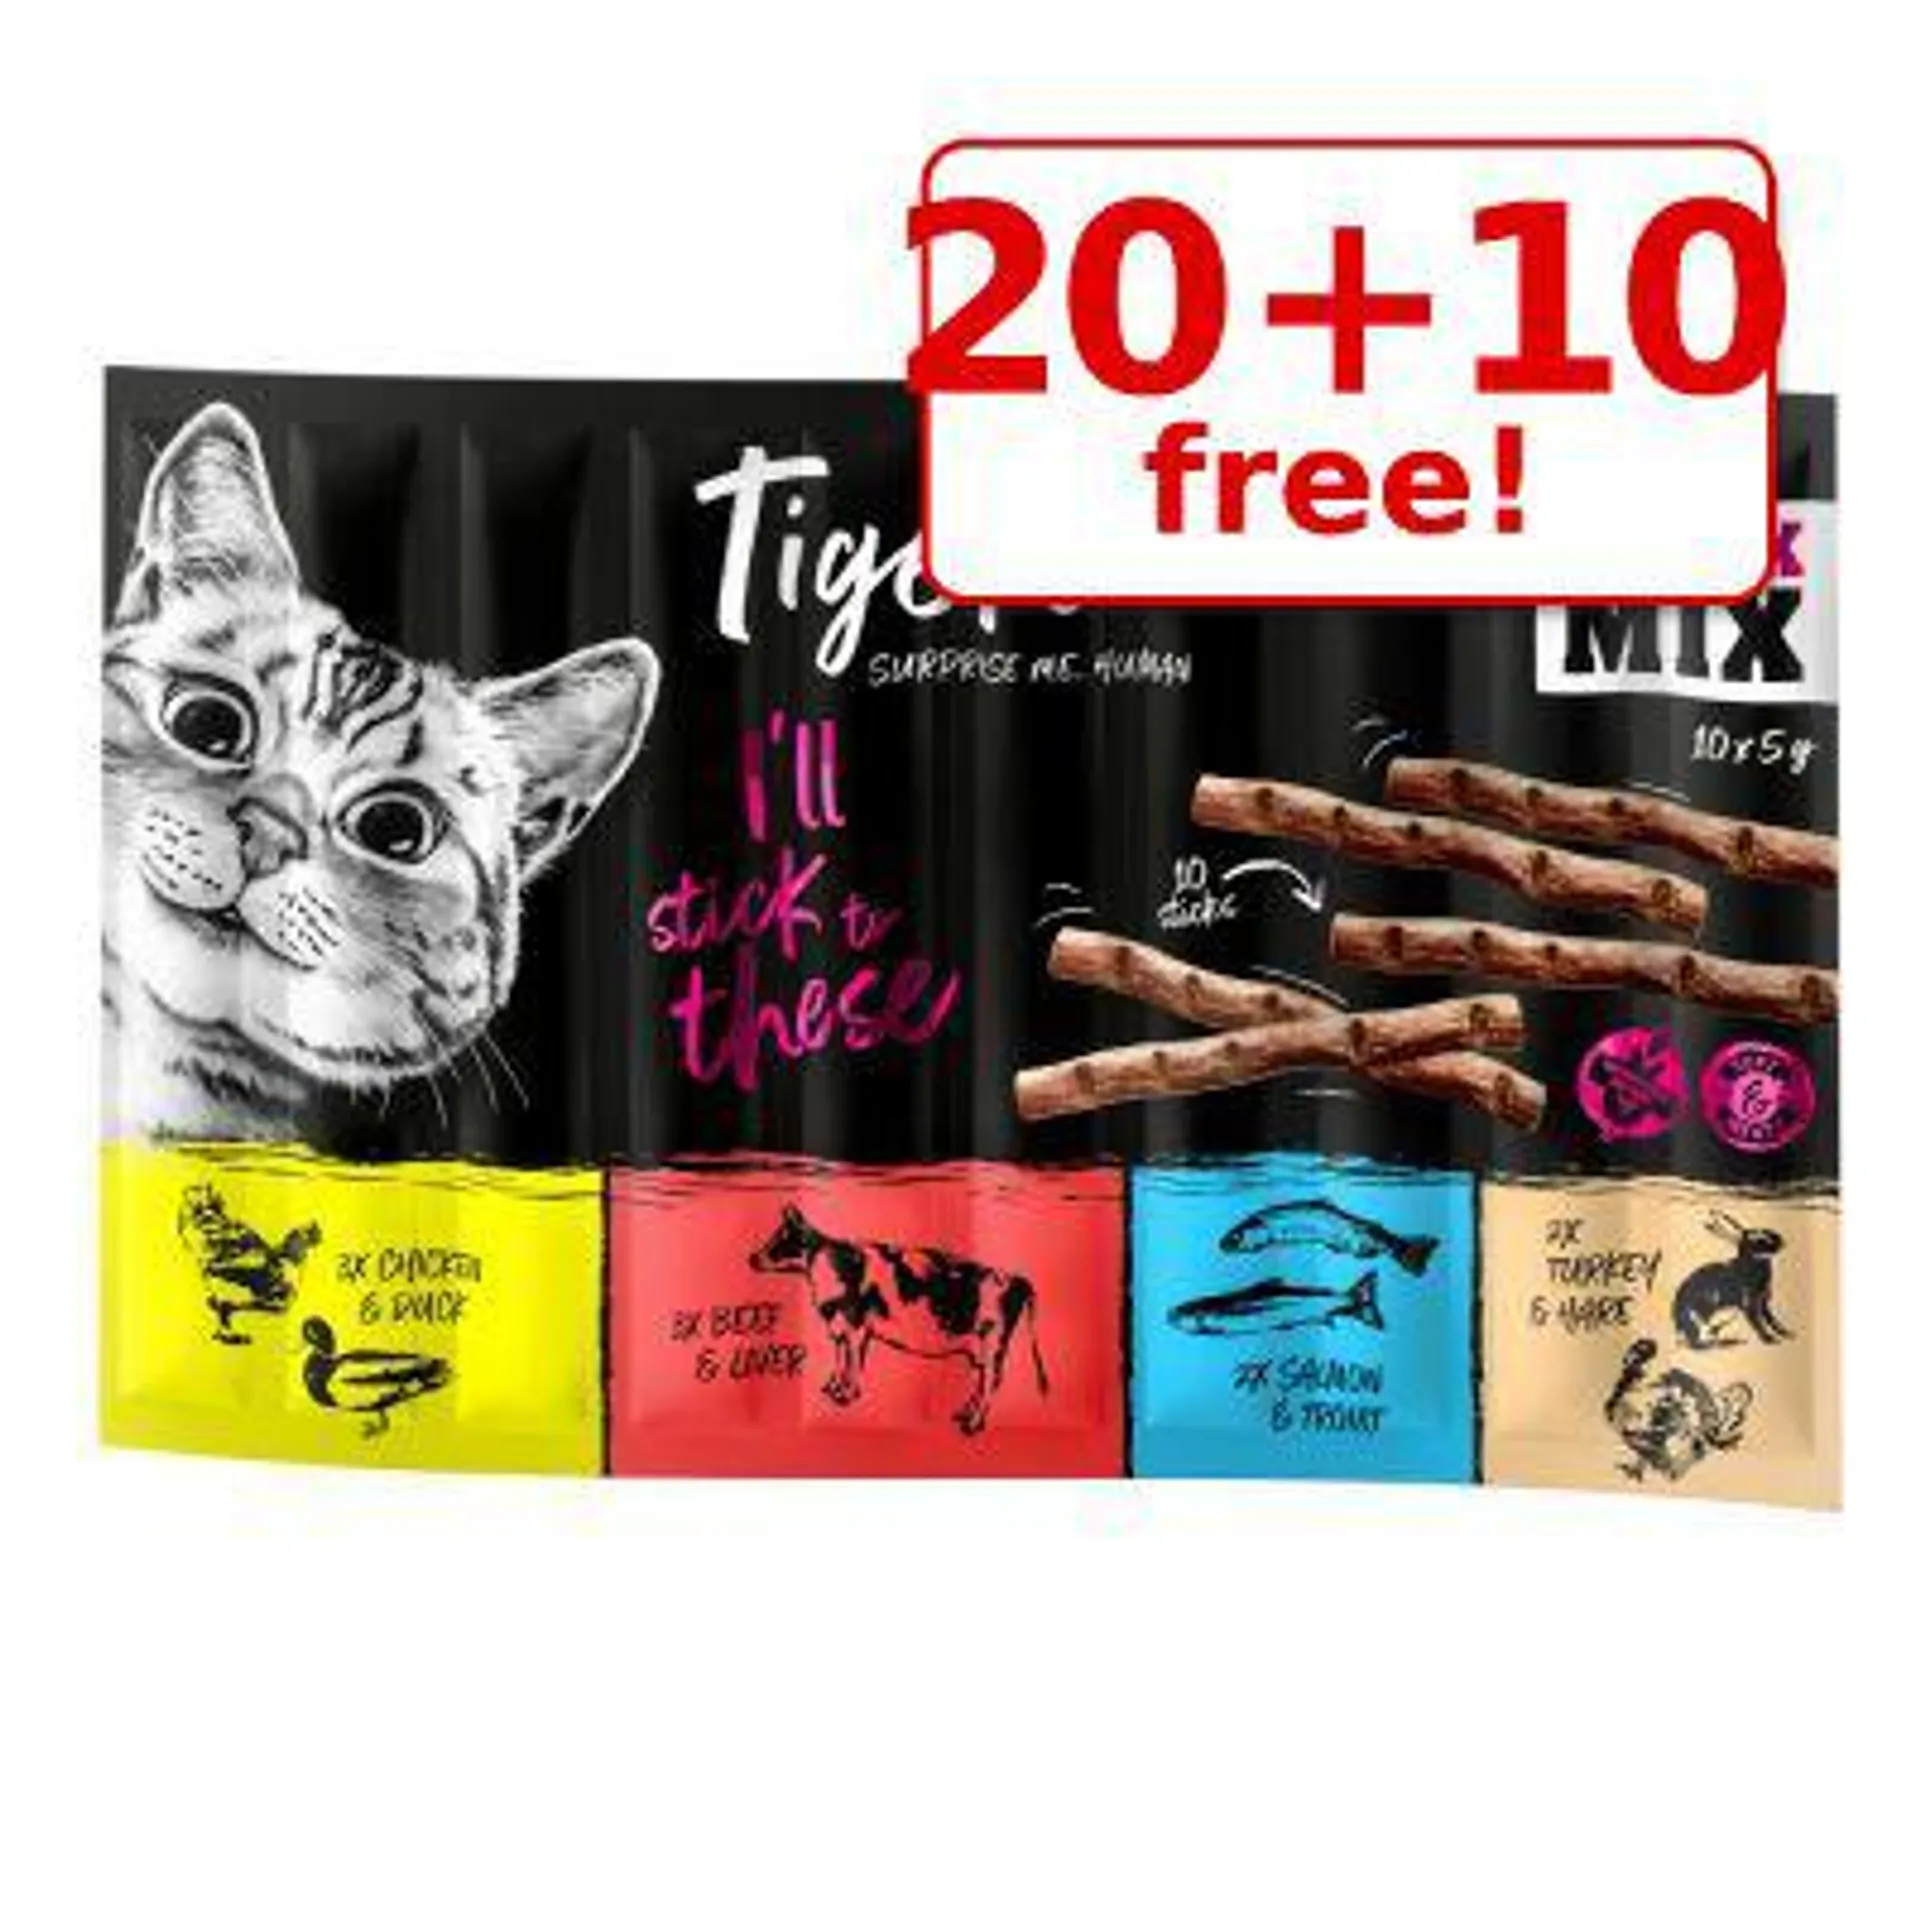 30 x 5g Tigeria Mixed Packs Cat Sticks - 20 + 10 Free!*